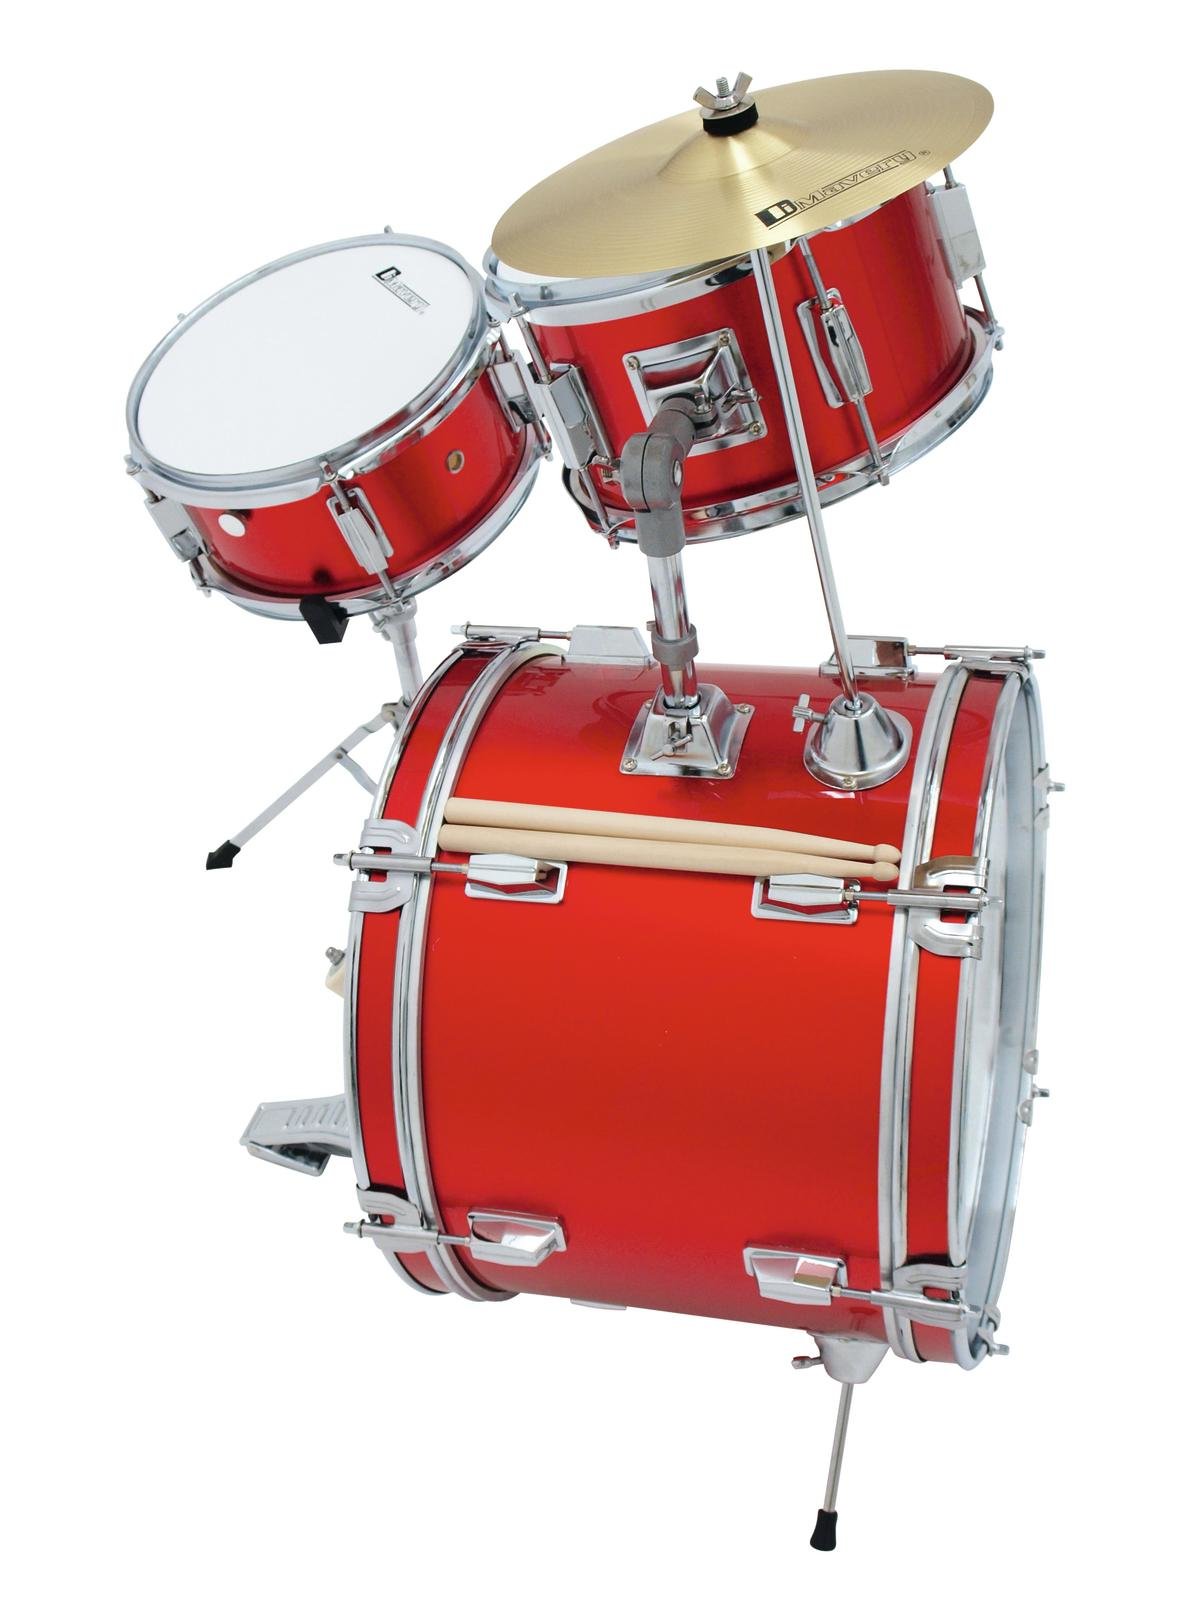 DIMAVERY JDS-203 Kids Drum Set, red